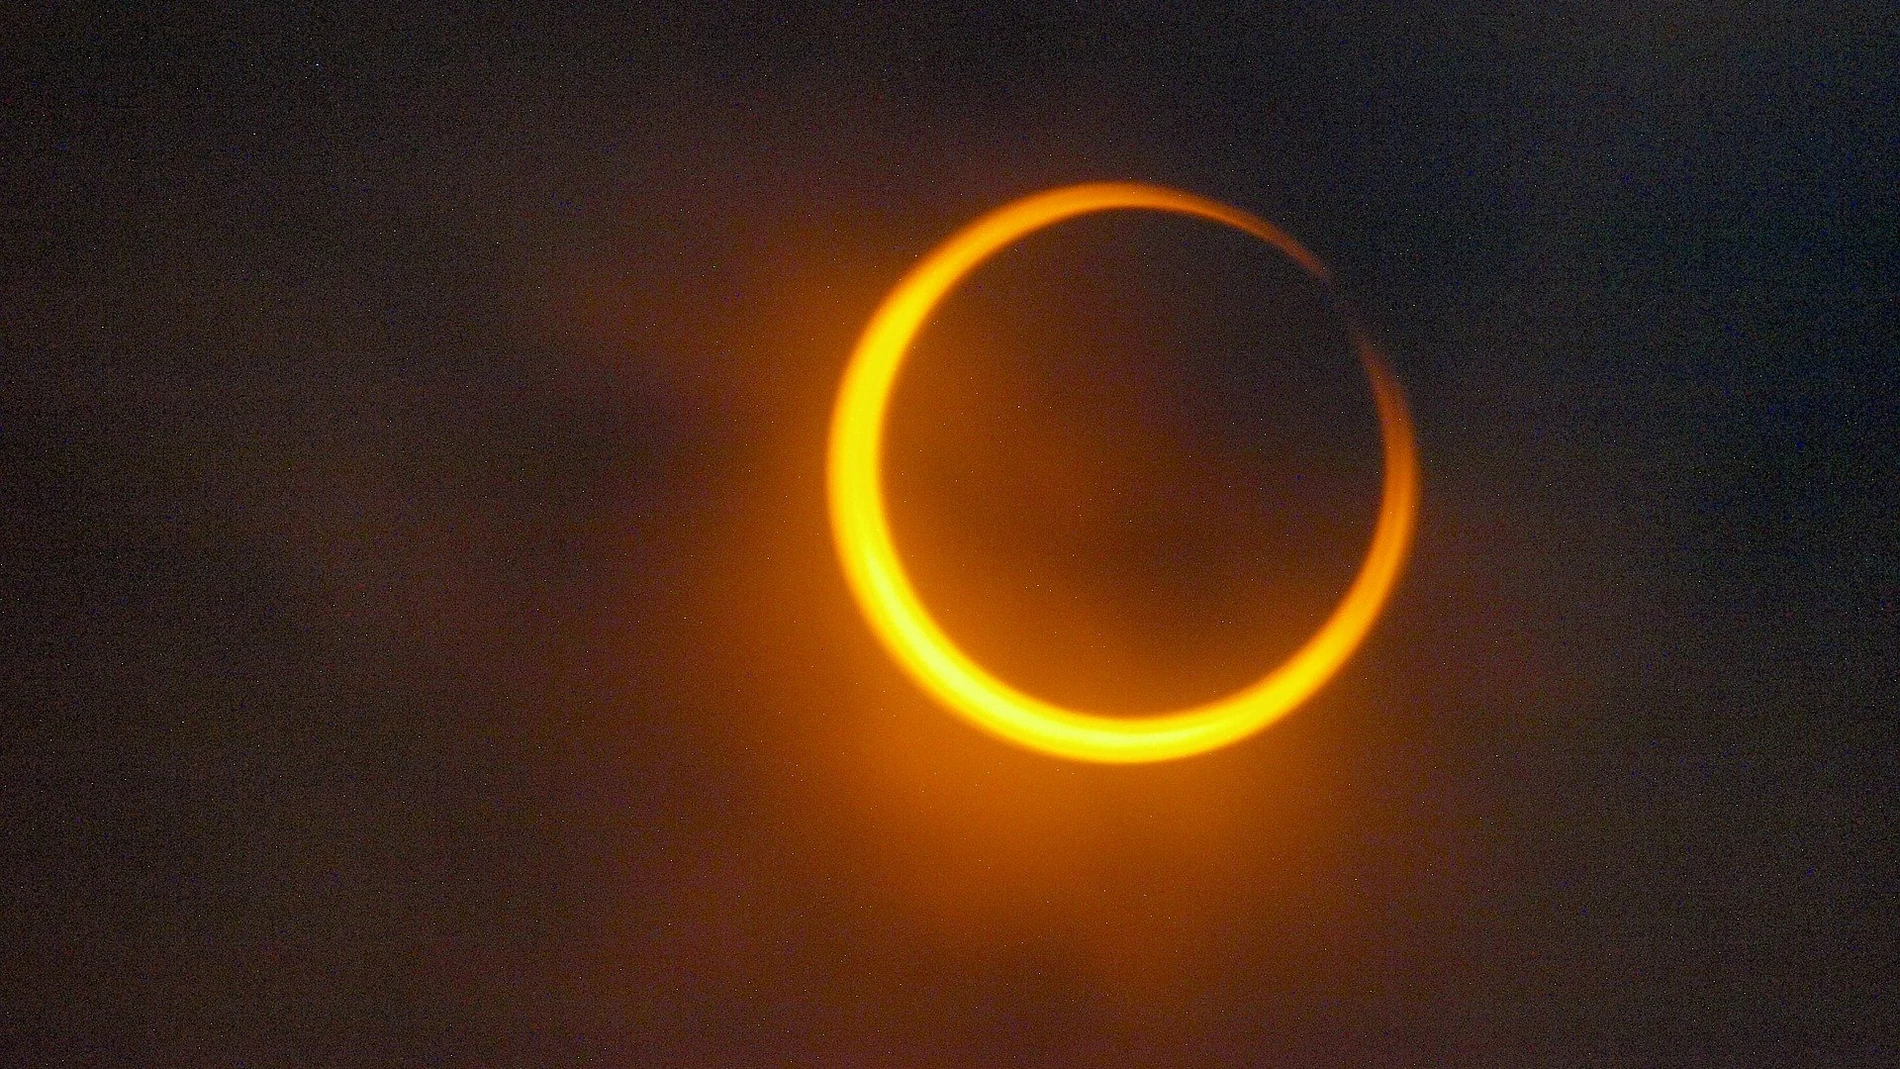  Eclipse anular solar, ¿por qué se le llama anillo de fuego?